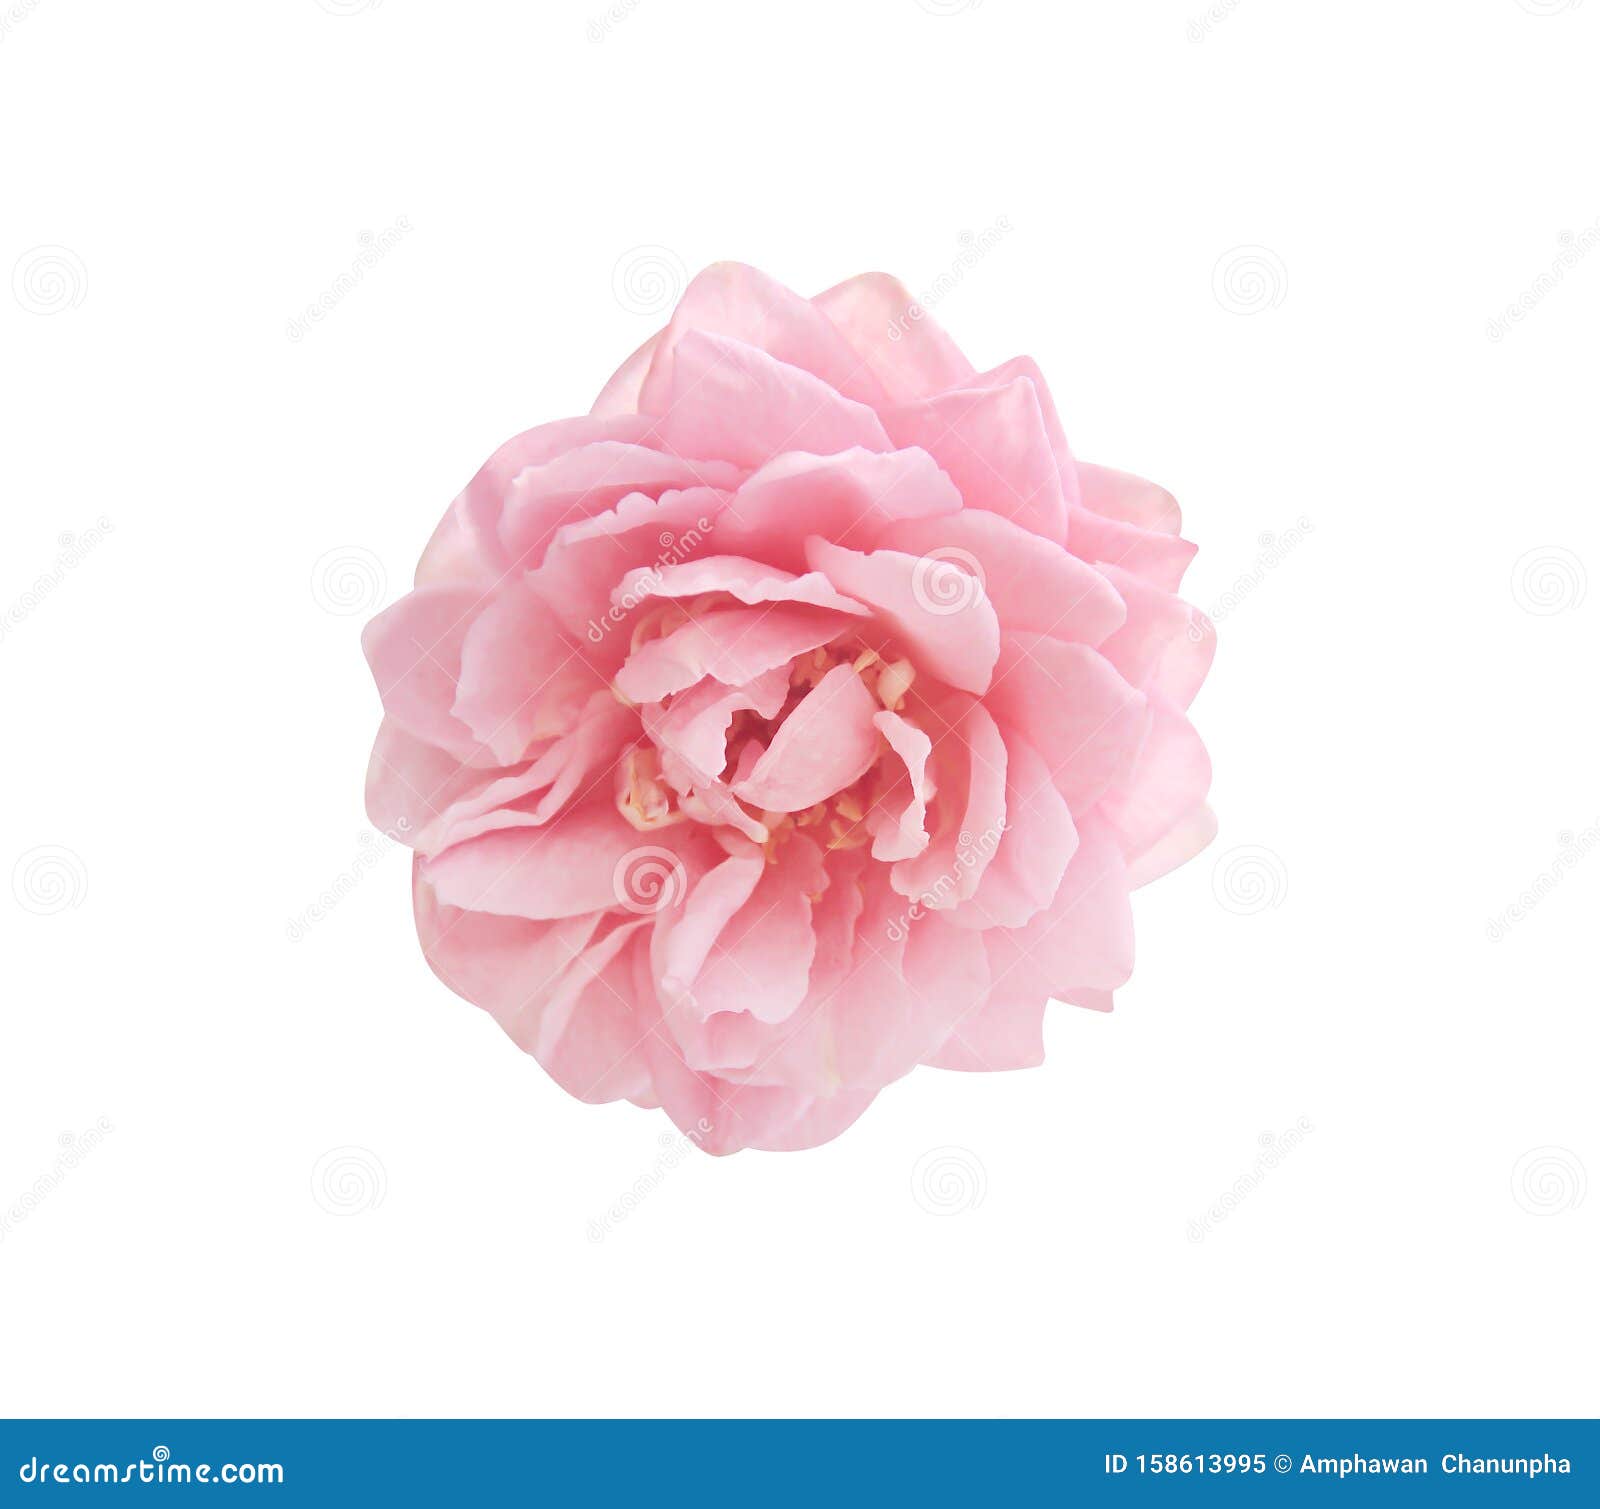 Nucleair Hallo Elegantie Verse Roze Lichtroze Bloemen Koppatroon Bloeiend Bovenaanzicht Afgesloten  Op Witte Achtergrond Met Knippad Stock Afbeelding - Image of bloemen,  geïsoleerd: 158613995